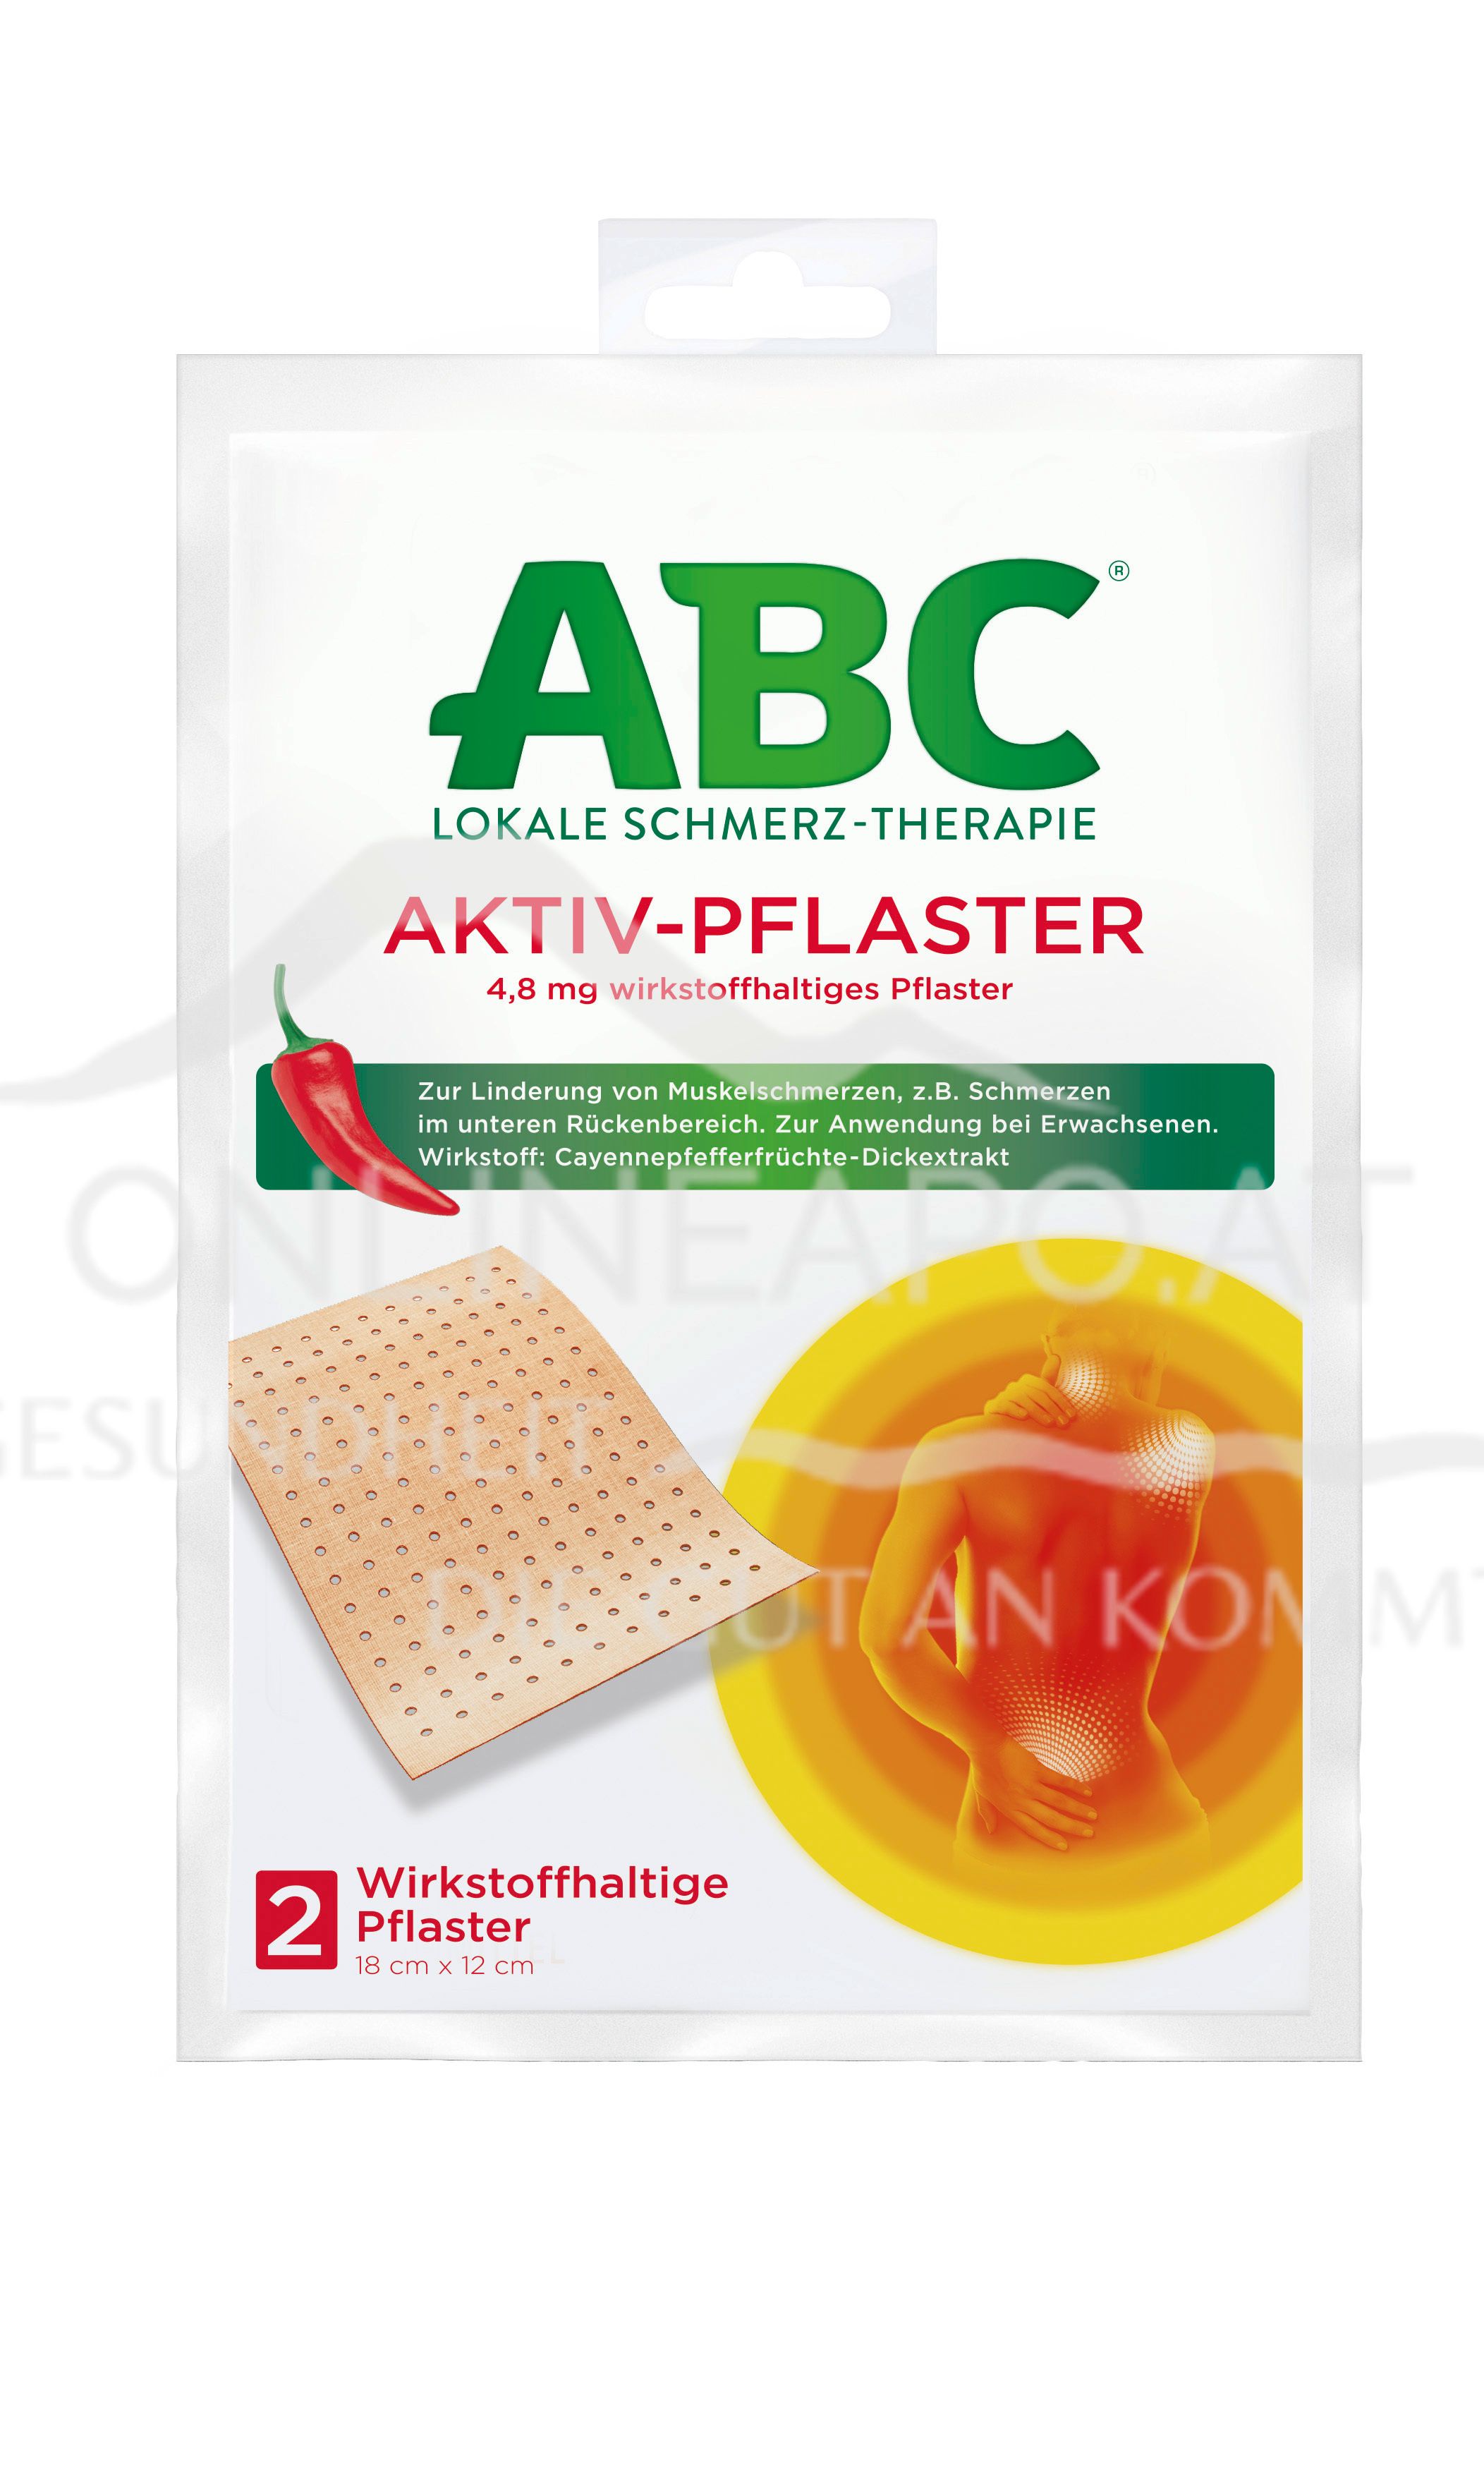 ABC® Lokale Schmerz-Therapie Aktiv-Pflaster 4,8 mg